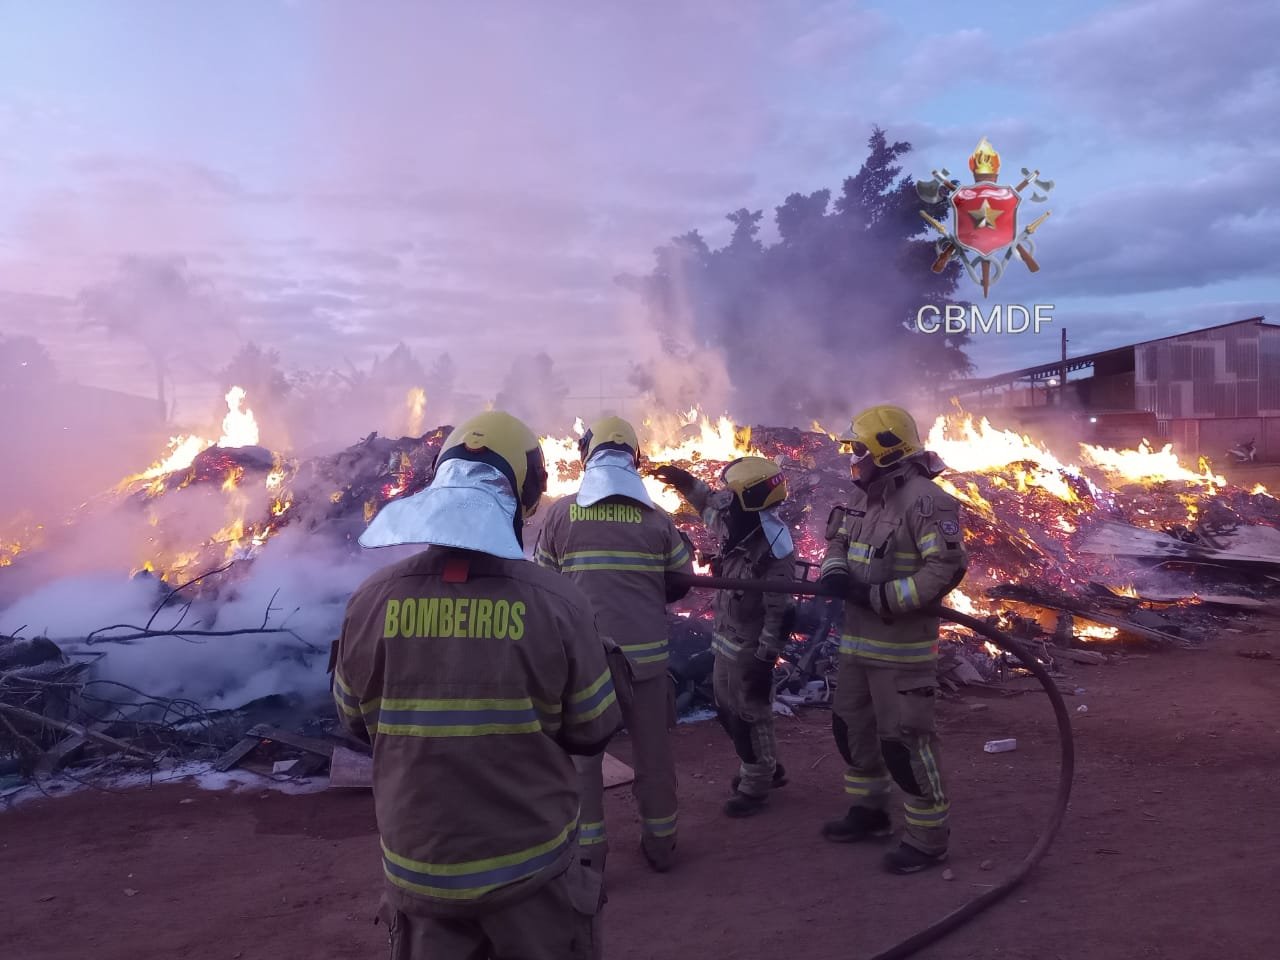 Vídeo: incêndio atinge depósito de madeira e recicláveis na Estrutural